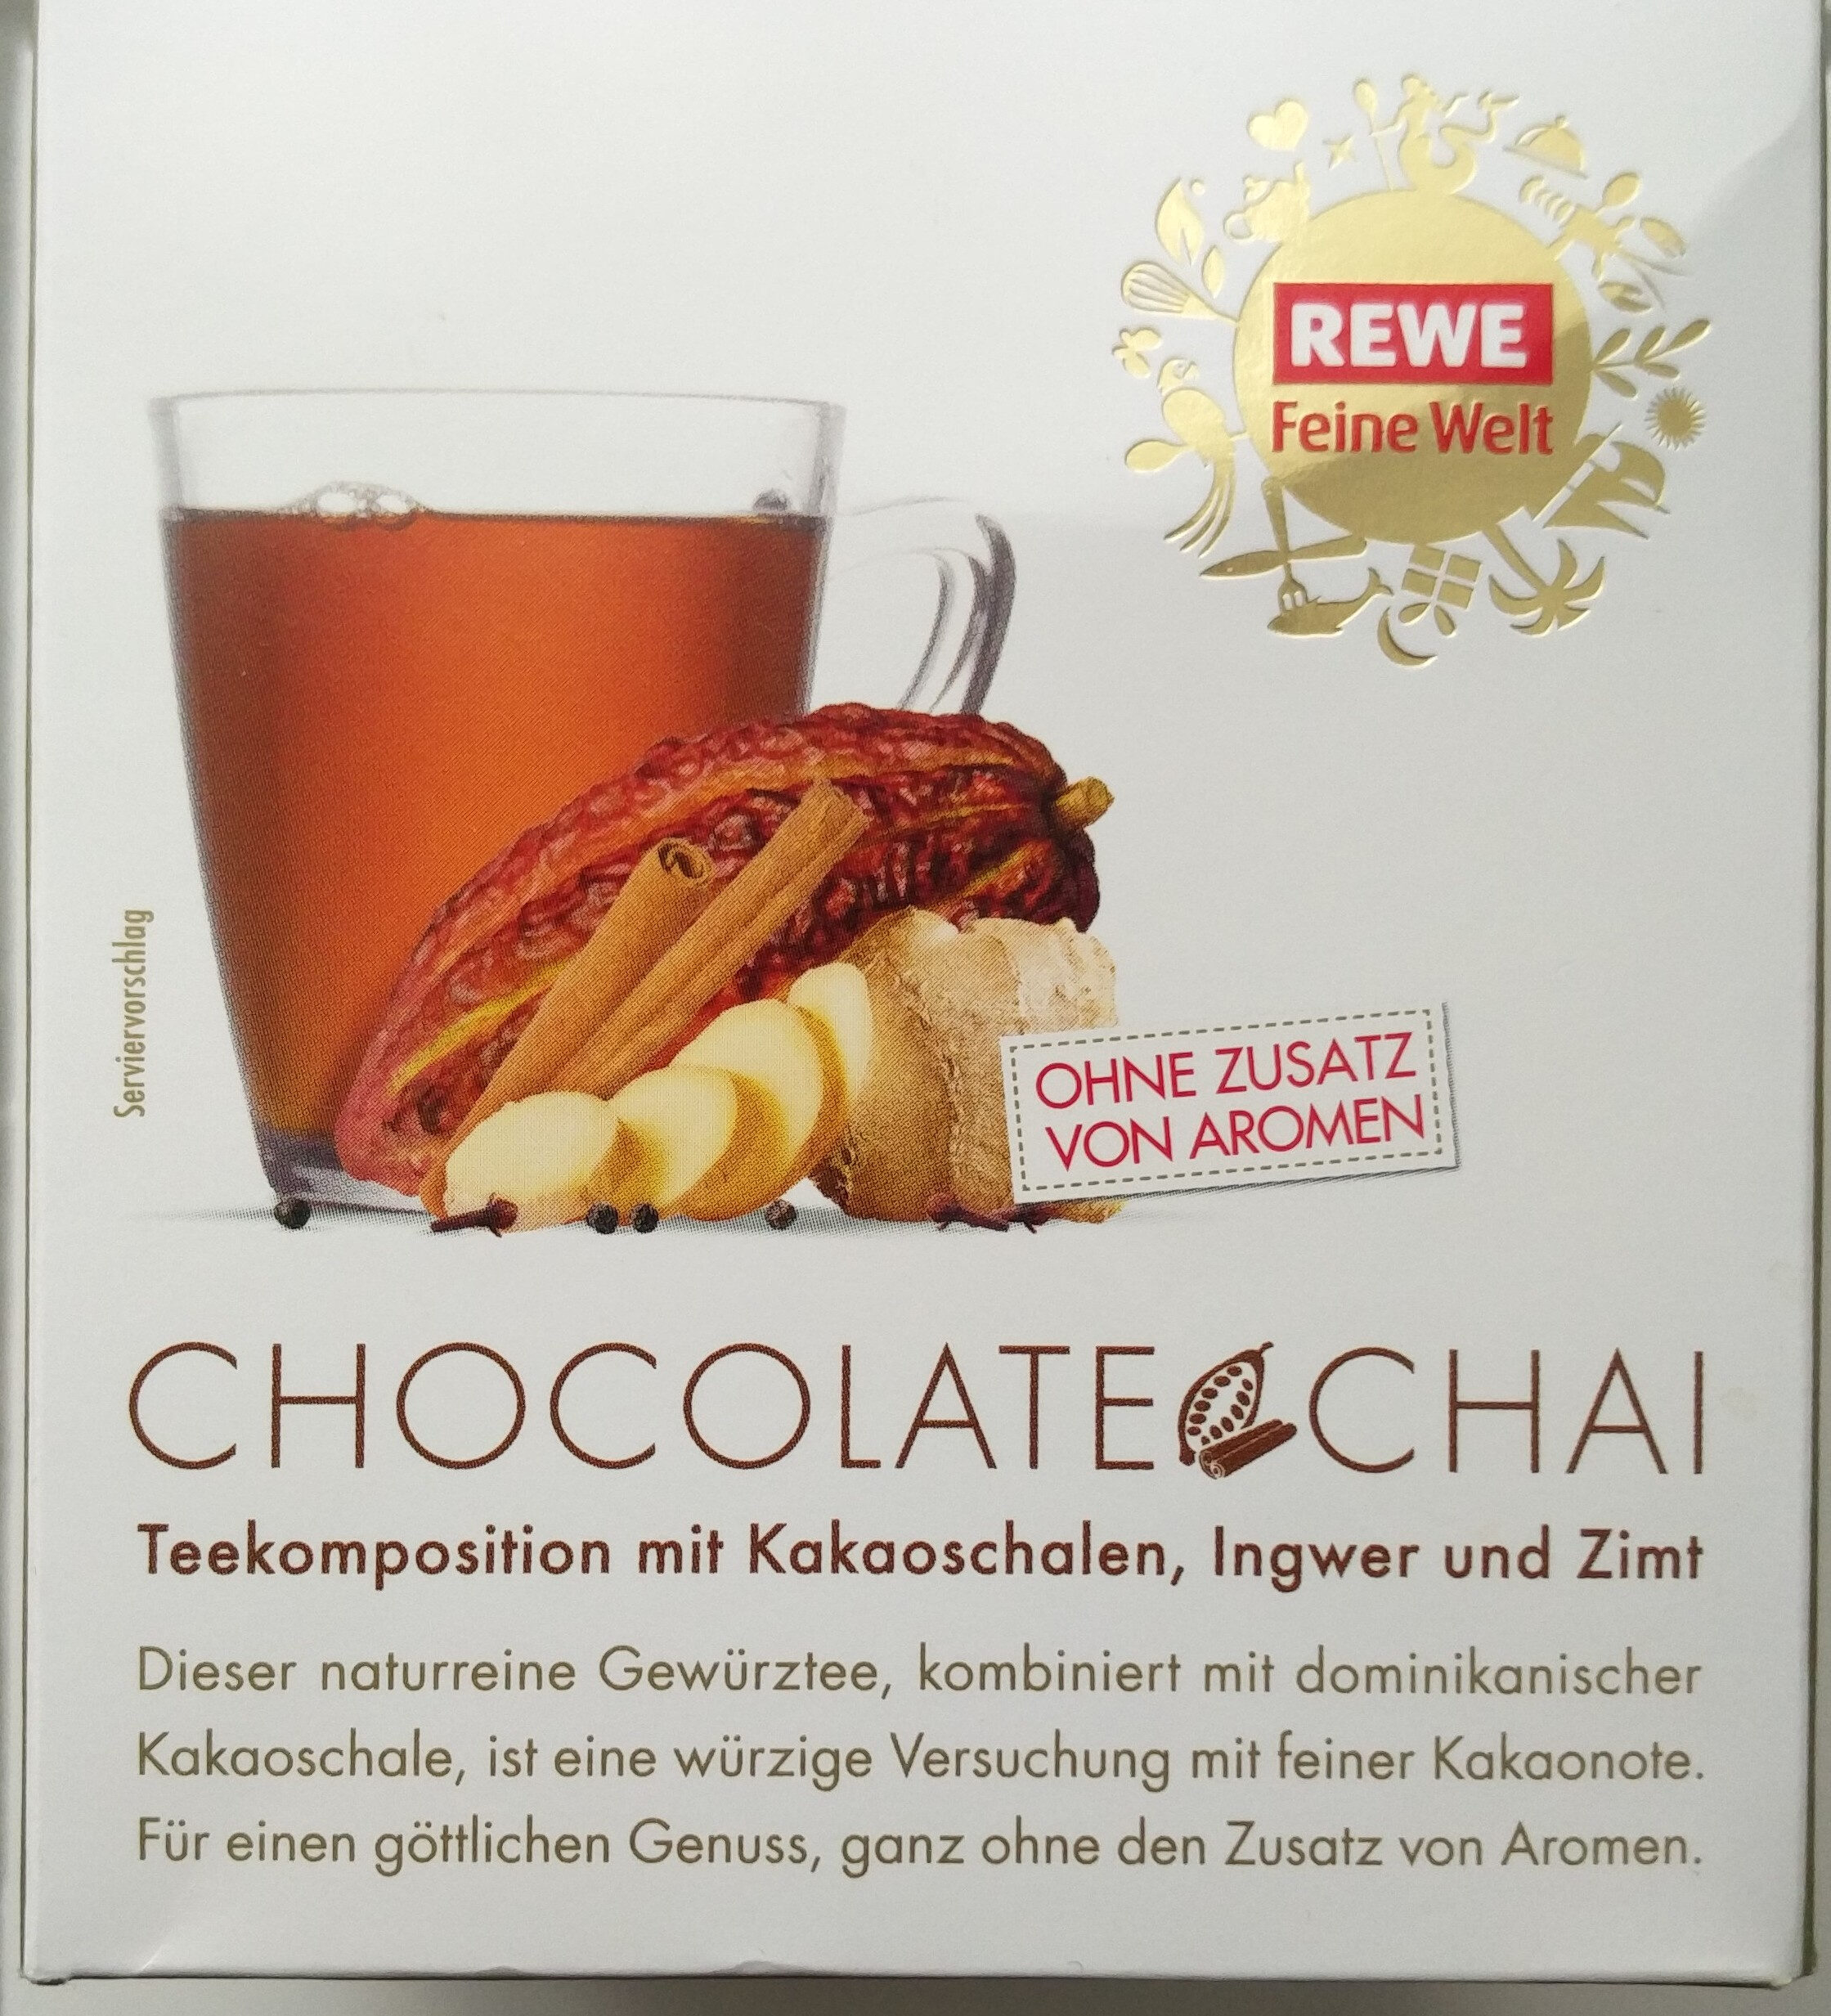 Chocolate Chai: Teekomposition mit Kakaoschalen, Ingwer und Zimt - Produkt